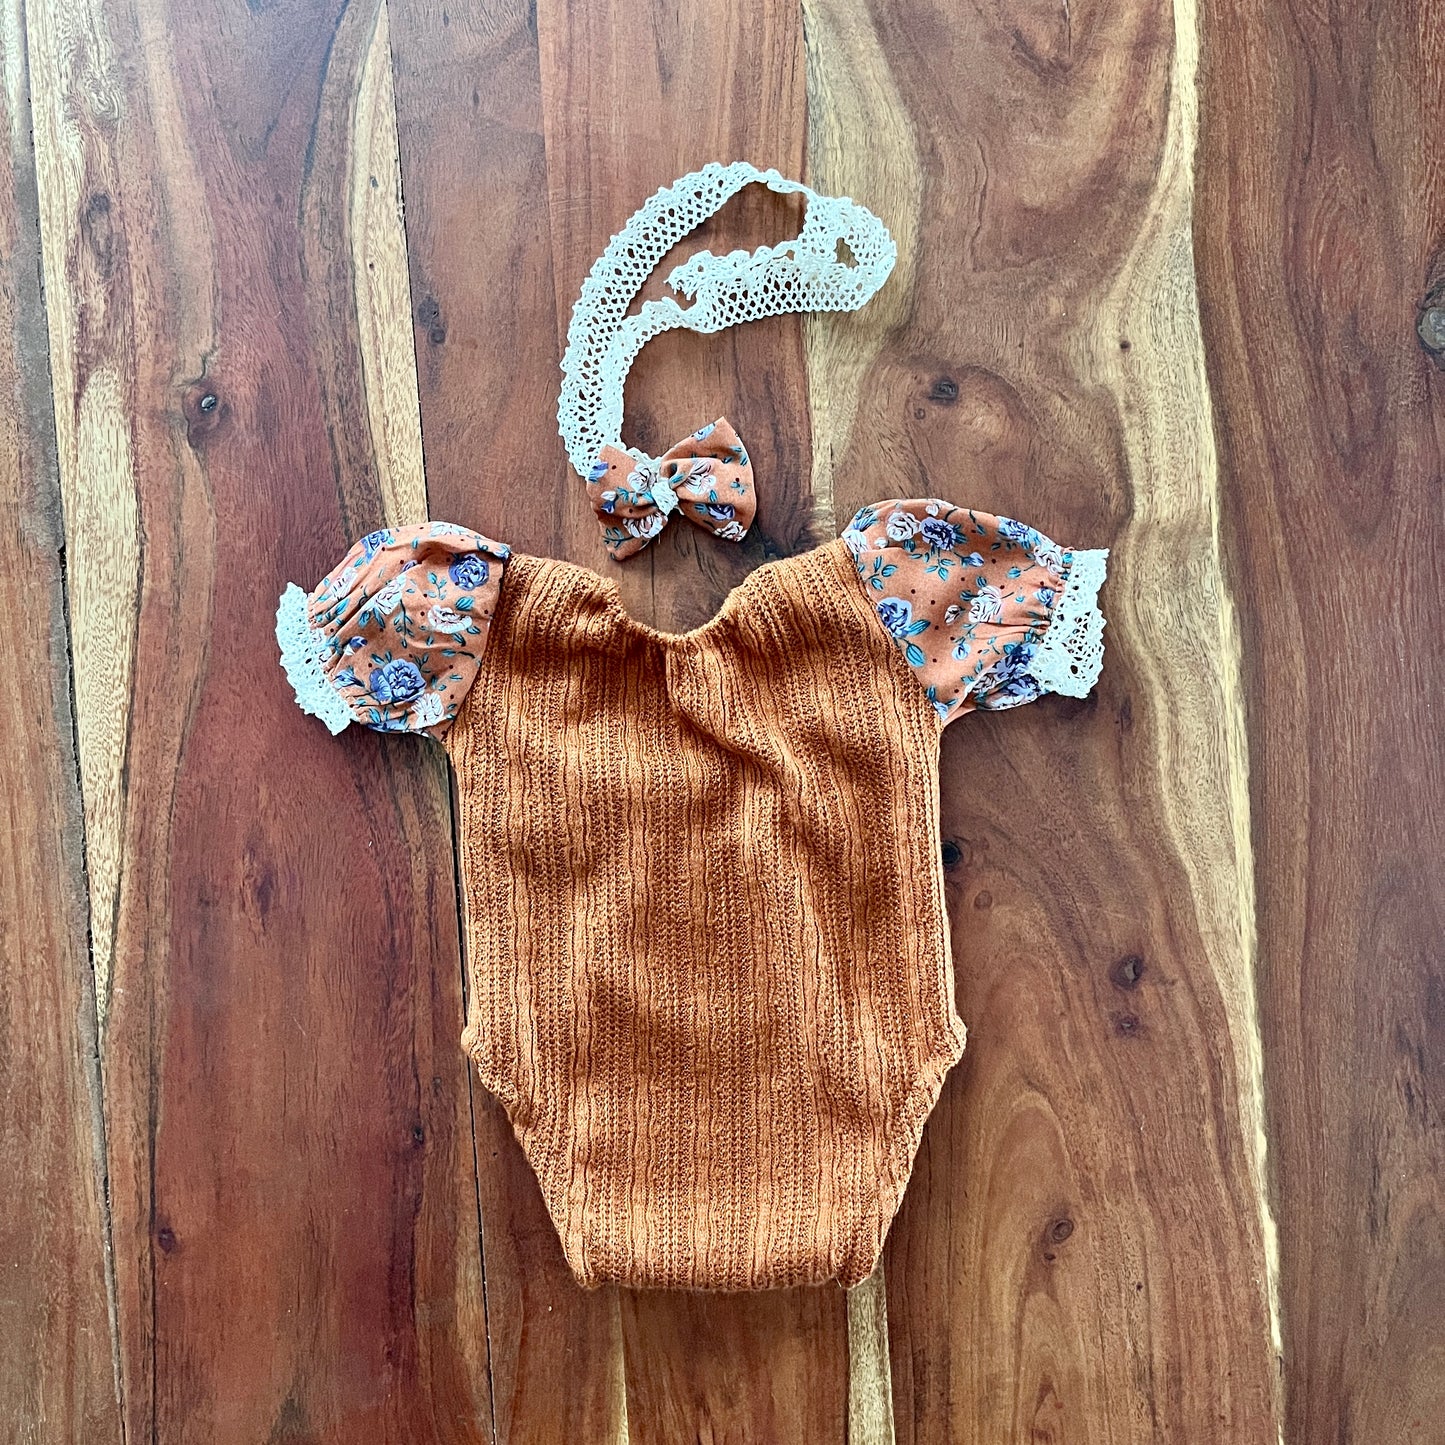 Sarah Neugeborenen-Fotografie-Requisiten-Outfit für Mädchen